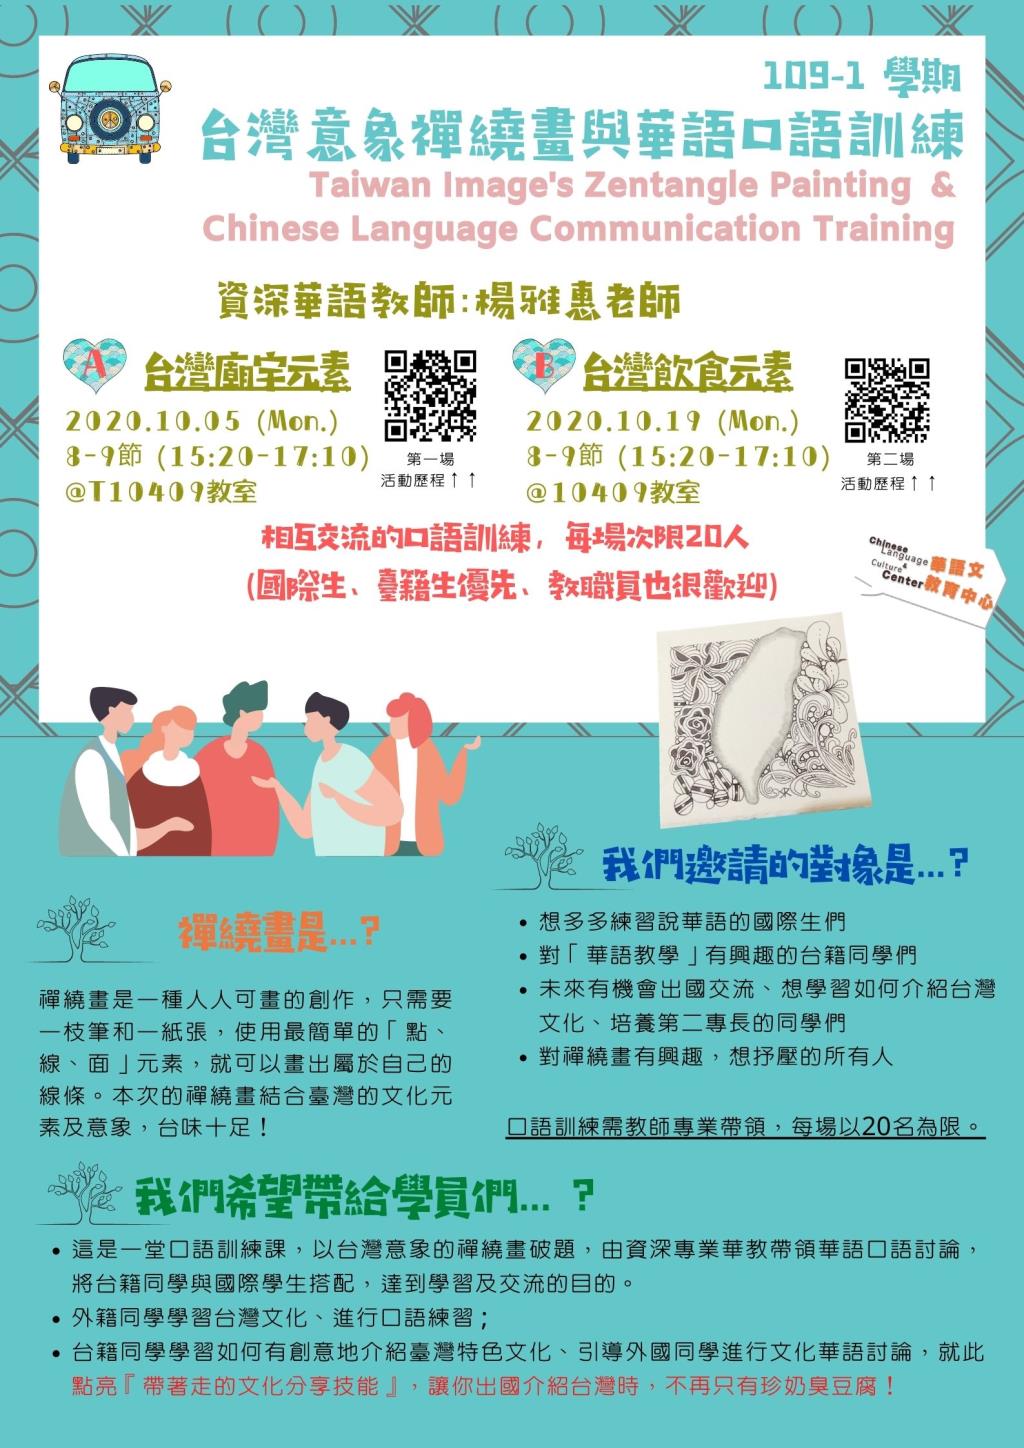 台灣意象禪繞畫與華語口語訓練 (歡迎台籍生找您的外籍同學一起來參加! )